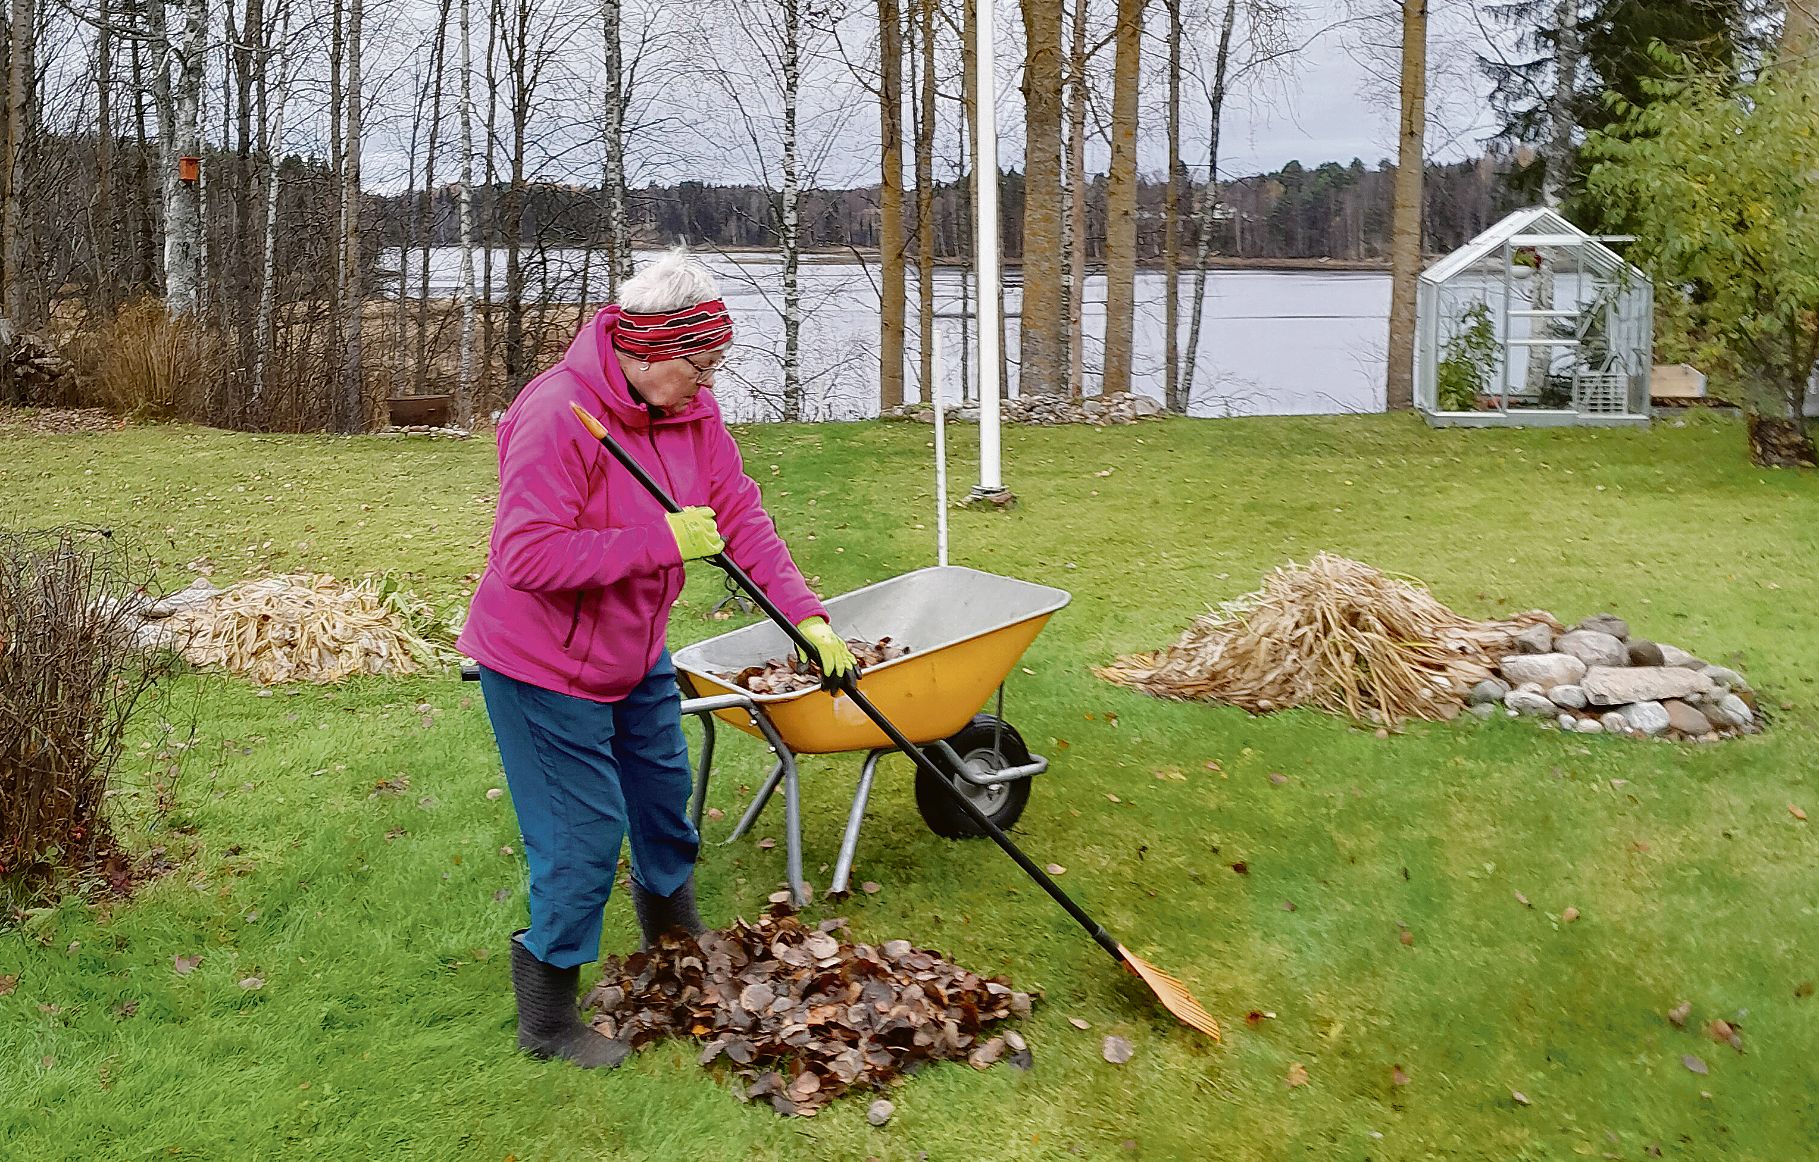 Milyen az élet Finnországban? Takarító nő – északi fényben